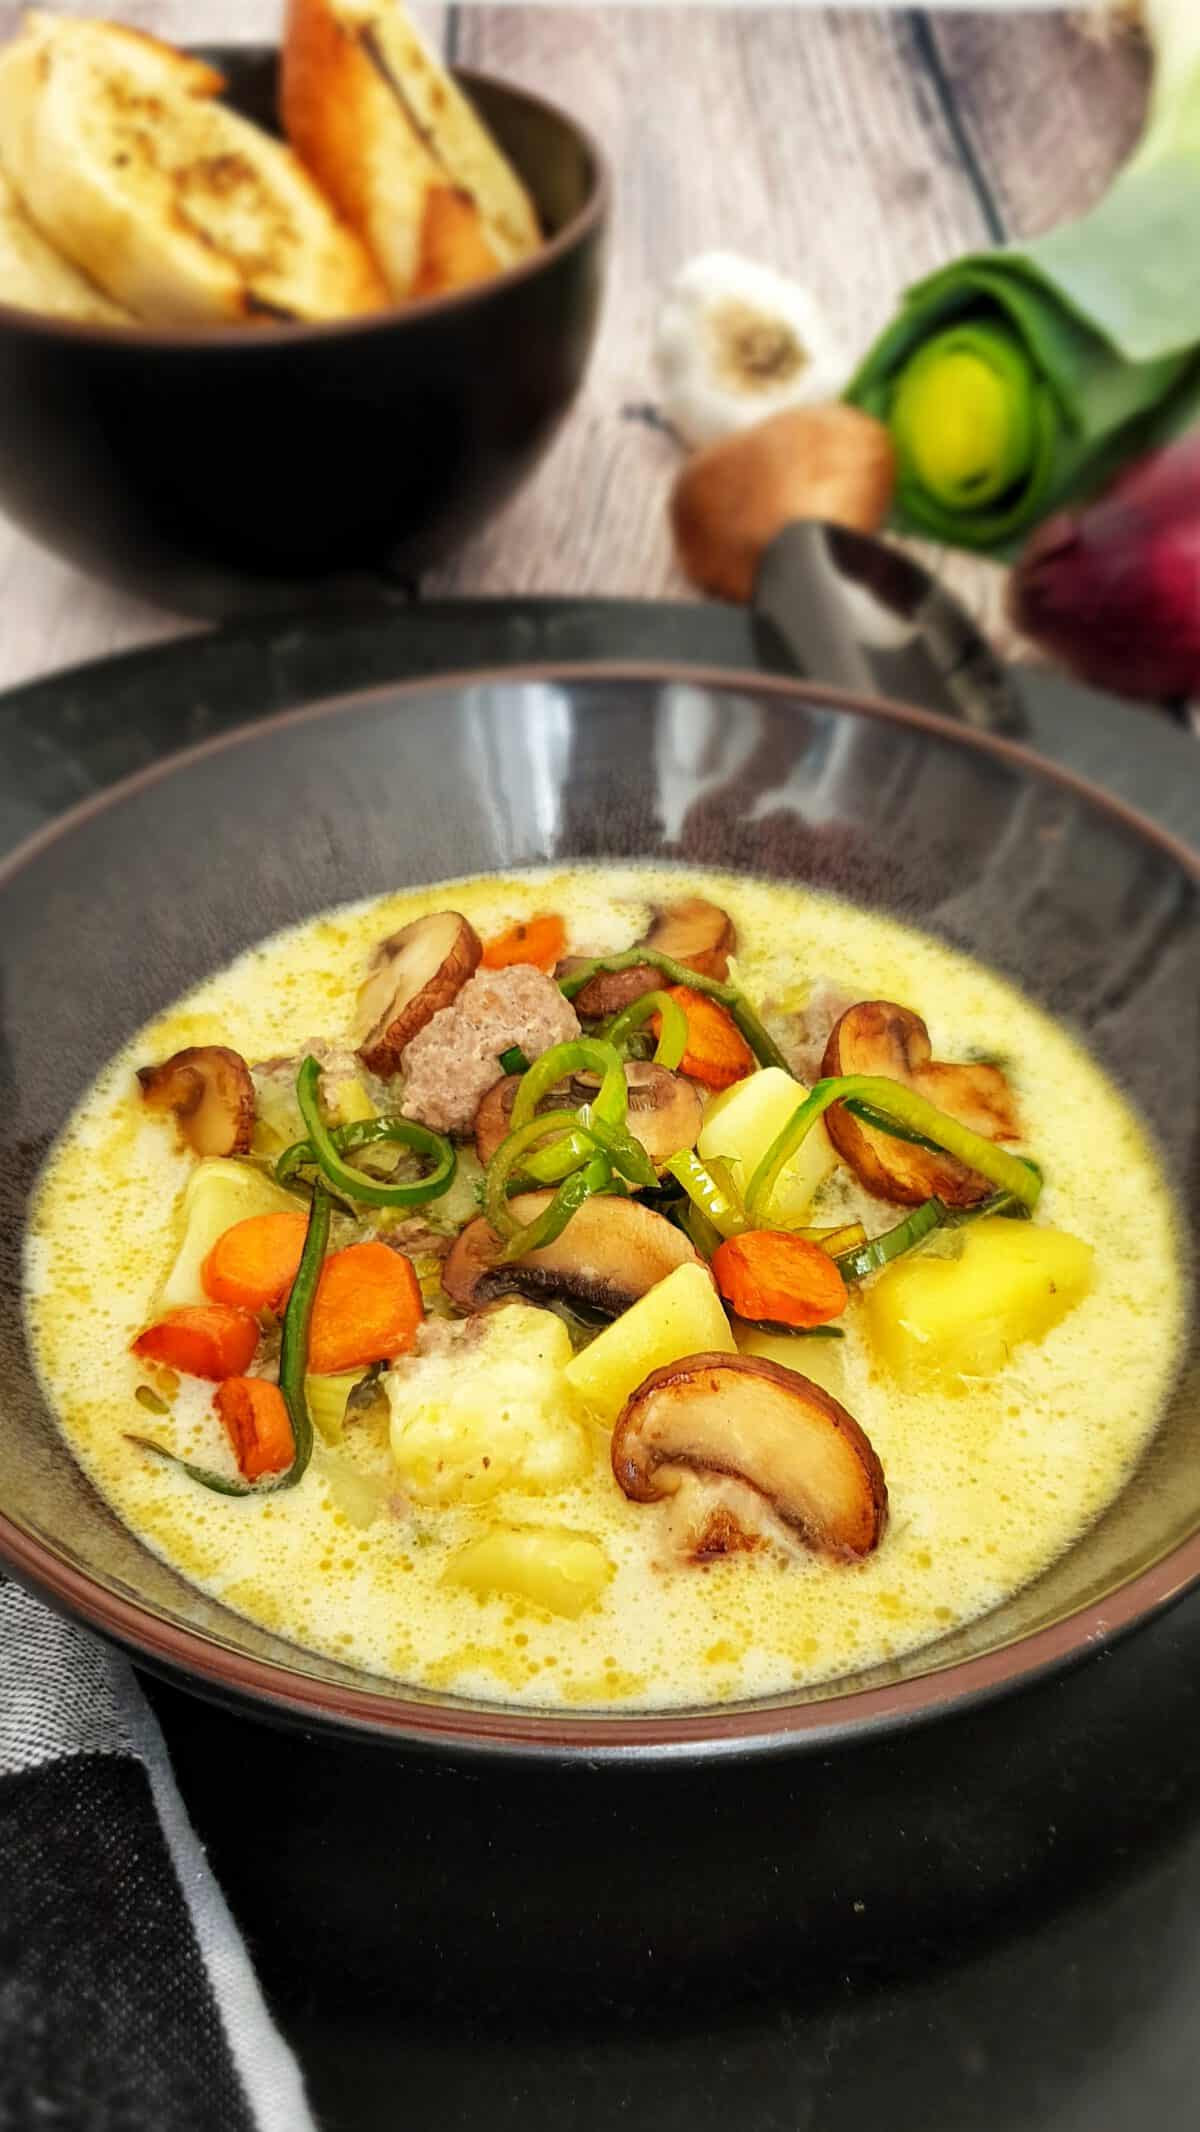 Käse-Lauch-Suppe mit Hackbällchen in einer braunen Suppenschale. Im Hintergrund Deko.